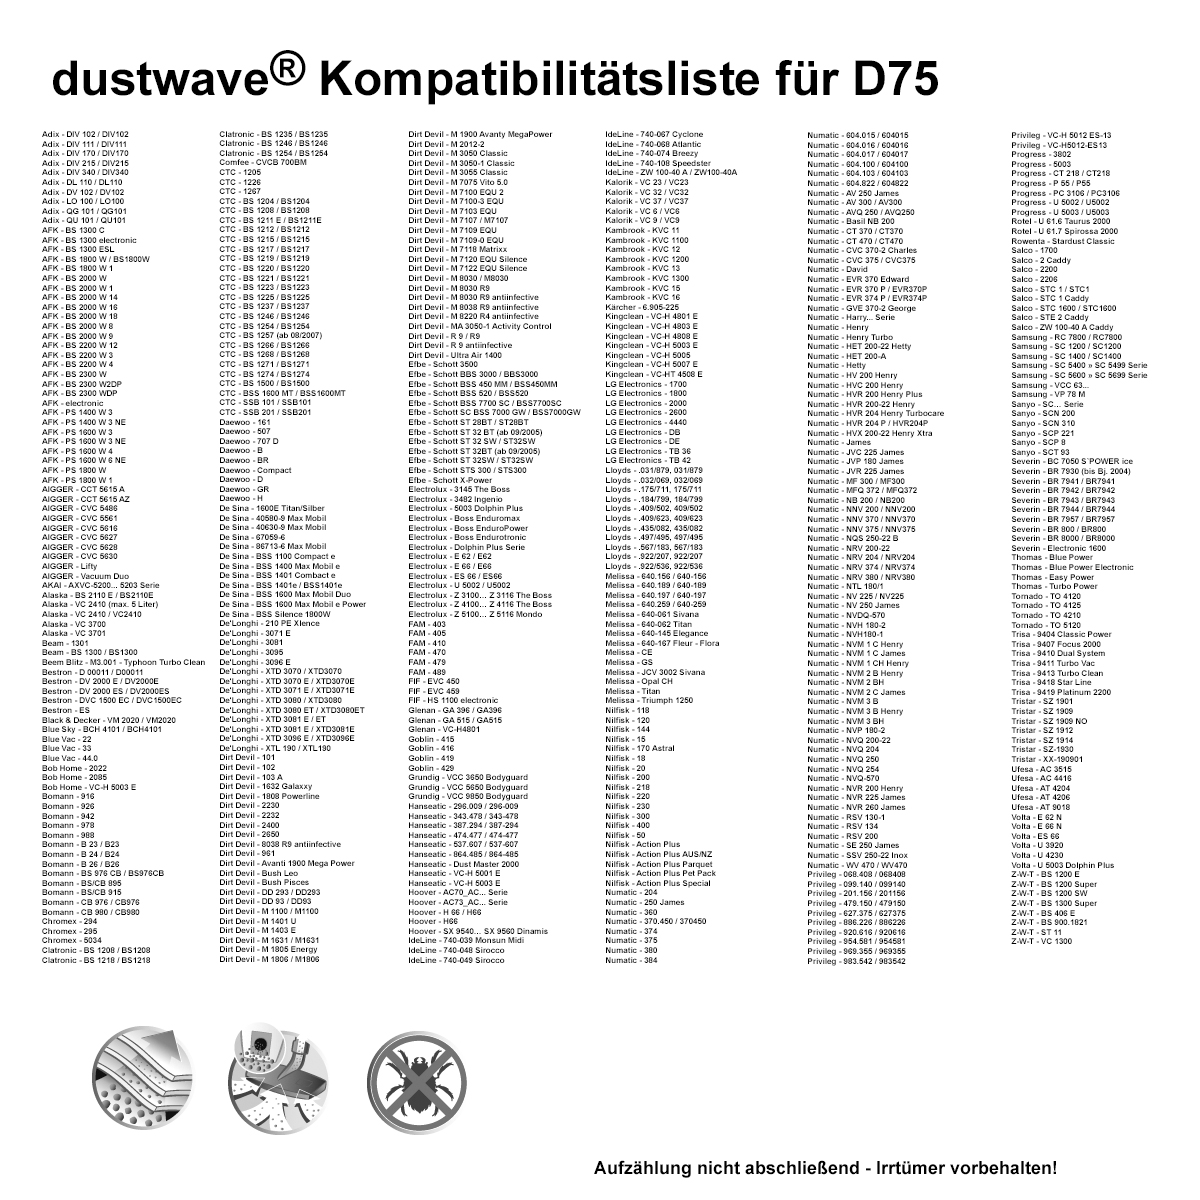 Dustwave® 1 Staubsaugerbeutel für Budget TVC 2400 - hocheffizient, mehrlagiges Mikrovlies mit Hygieneverschluss - Made in Germany